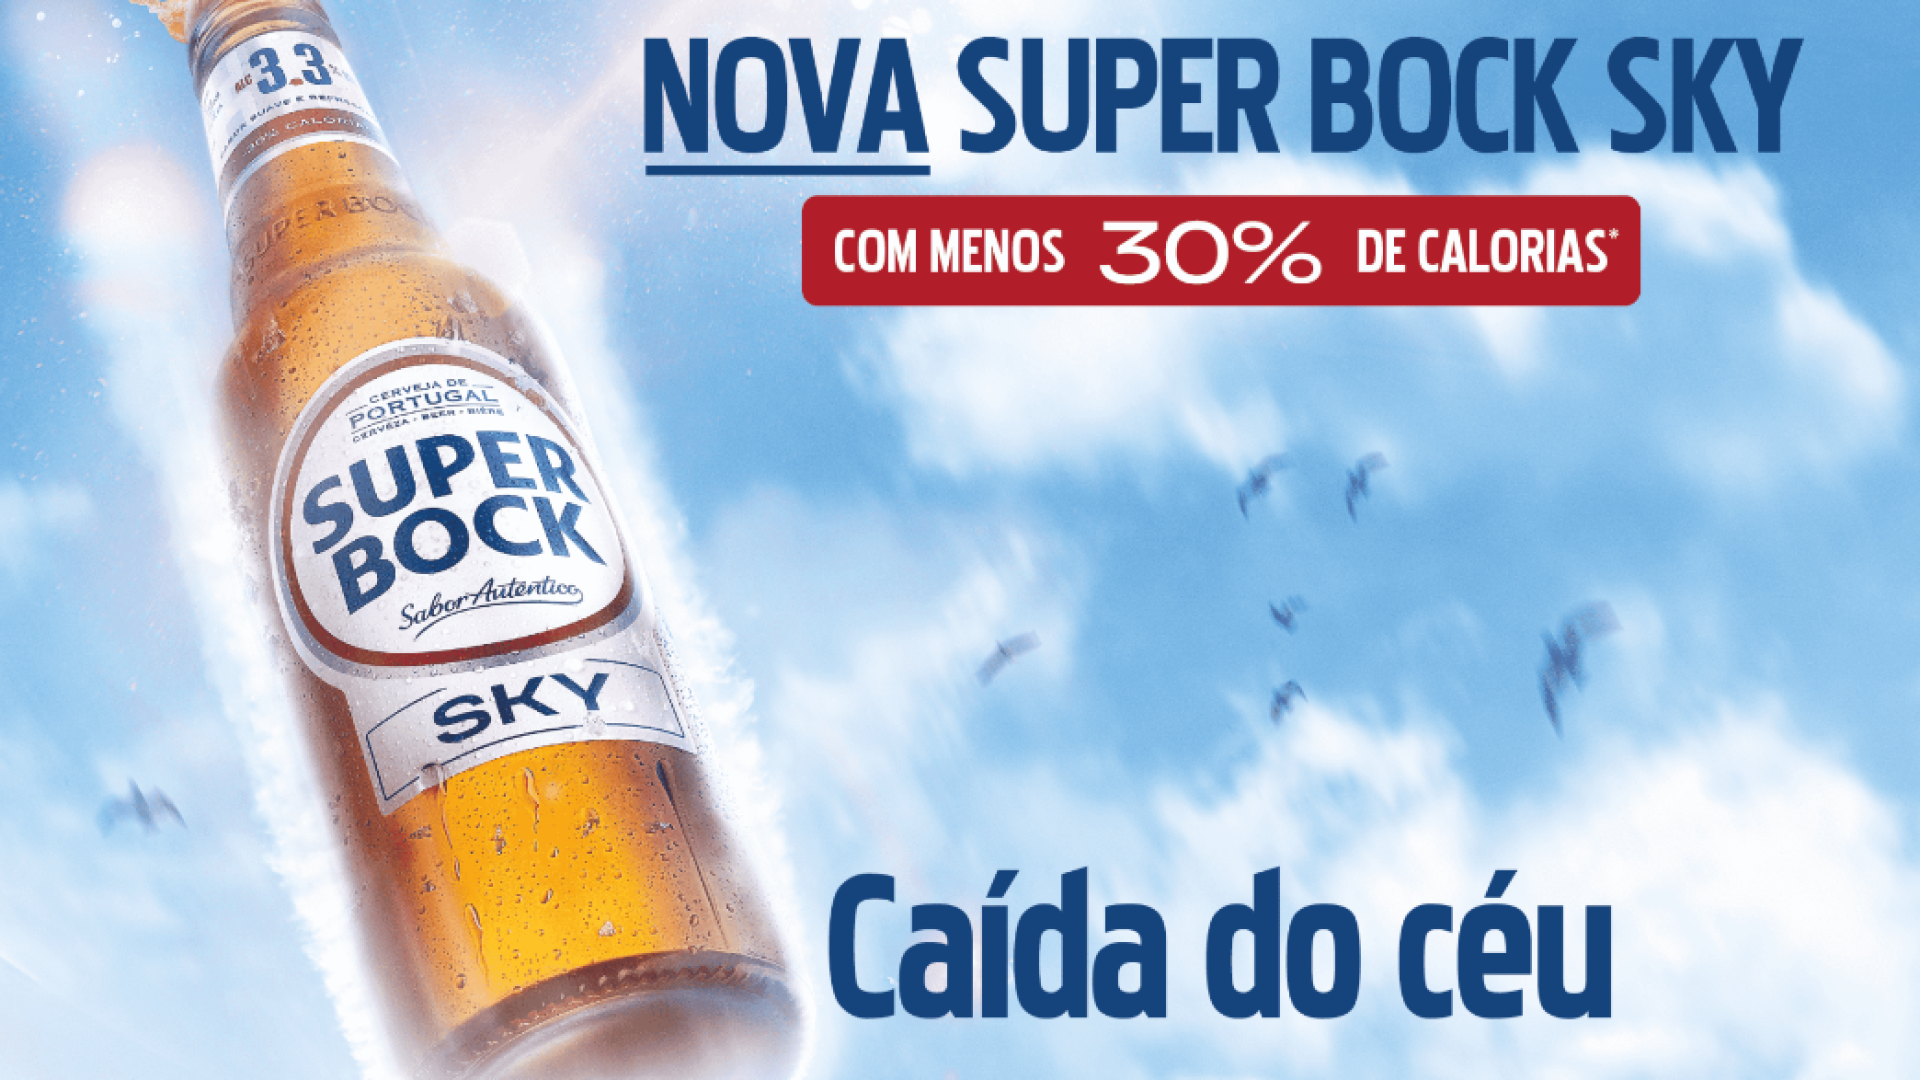 Nova Super Bock Sky tem campanha “caída do céu”